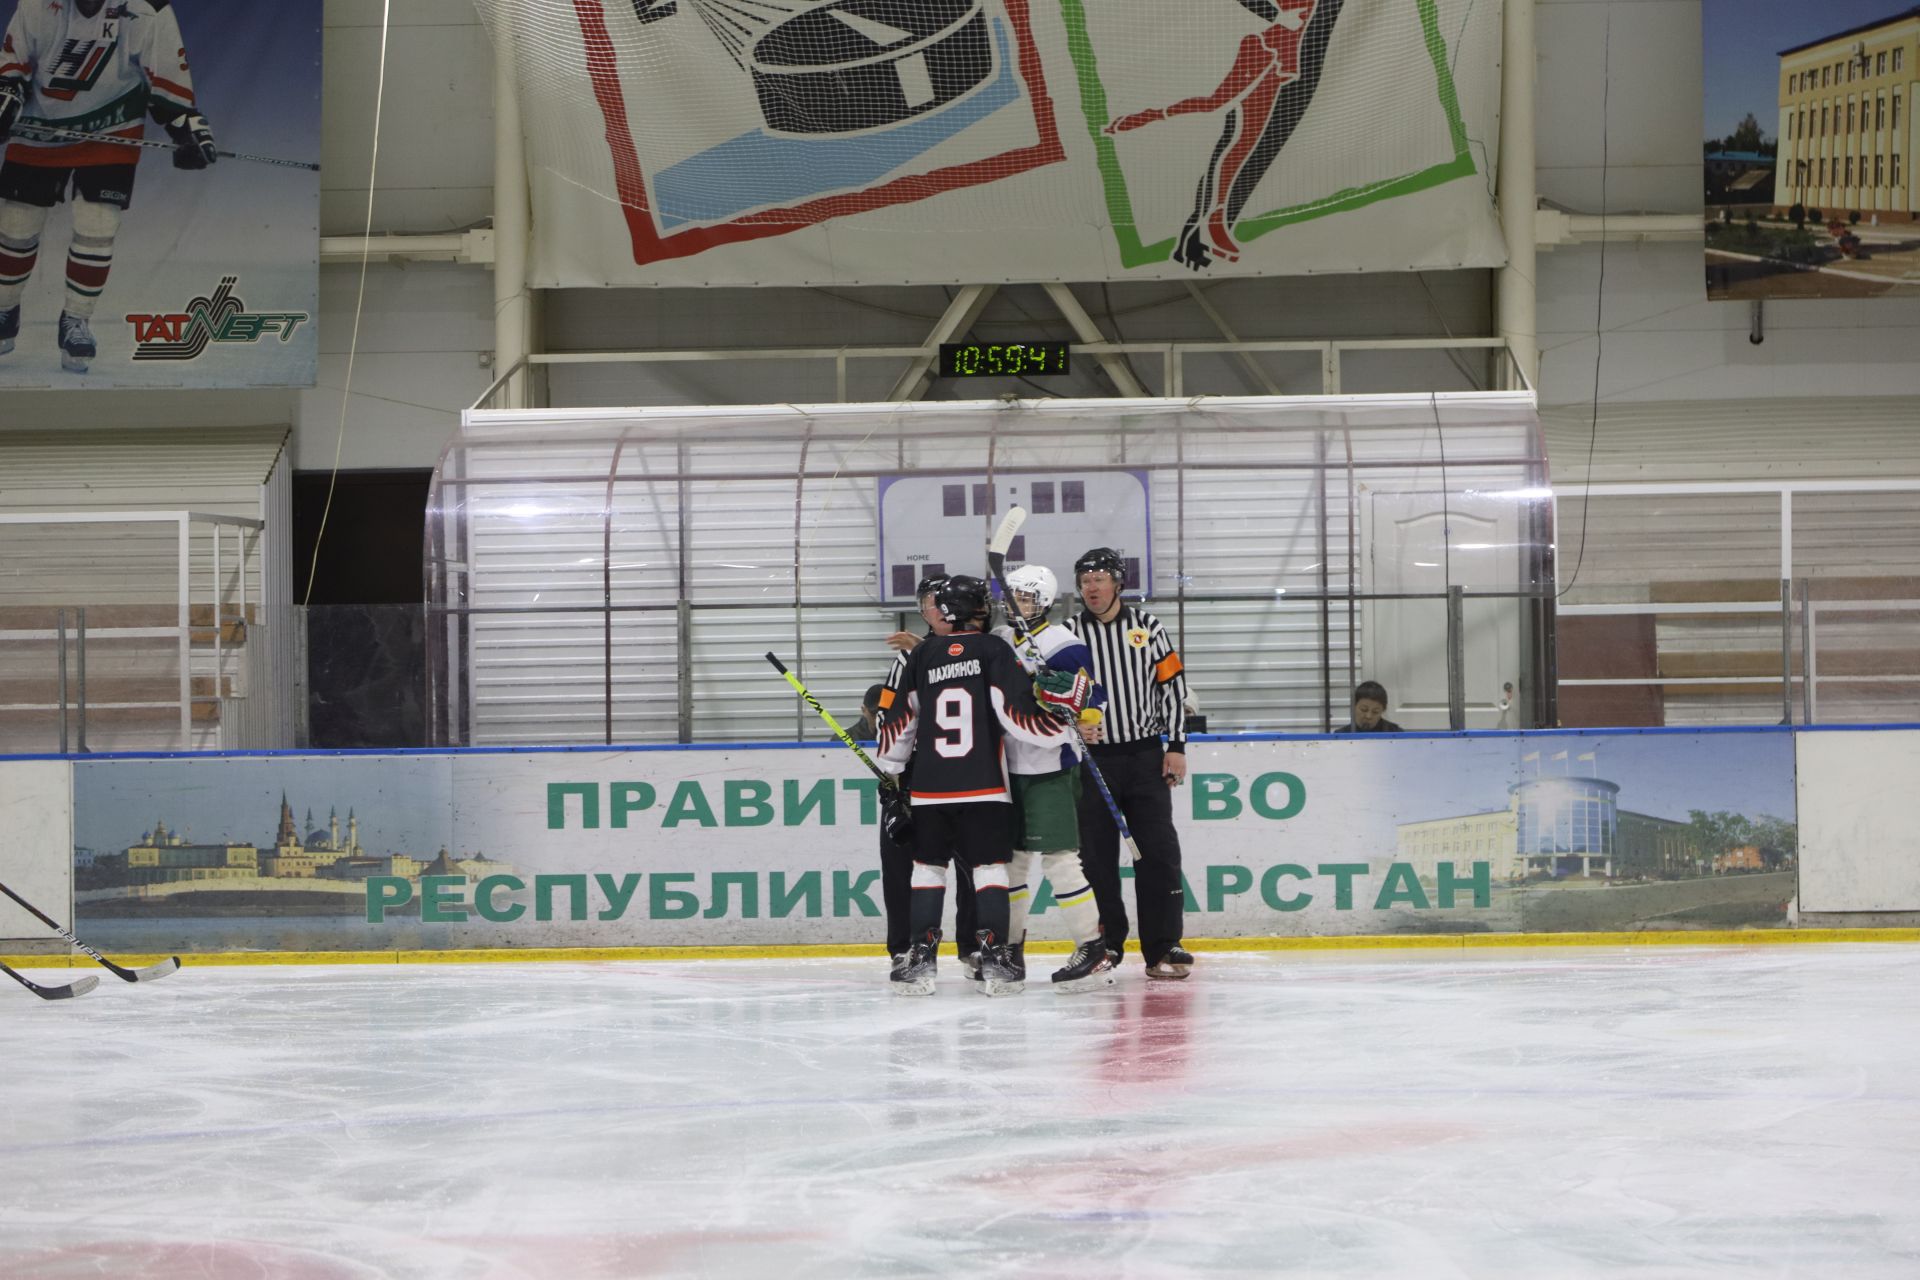 Хоккейная команда «Олимп» второй год становится серебряным призером Первенства РТ